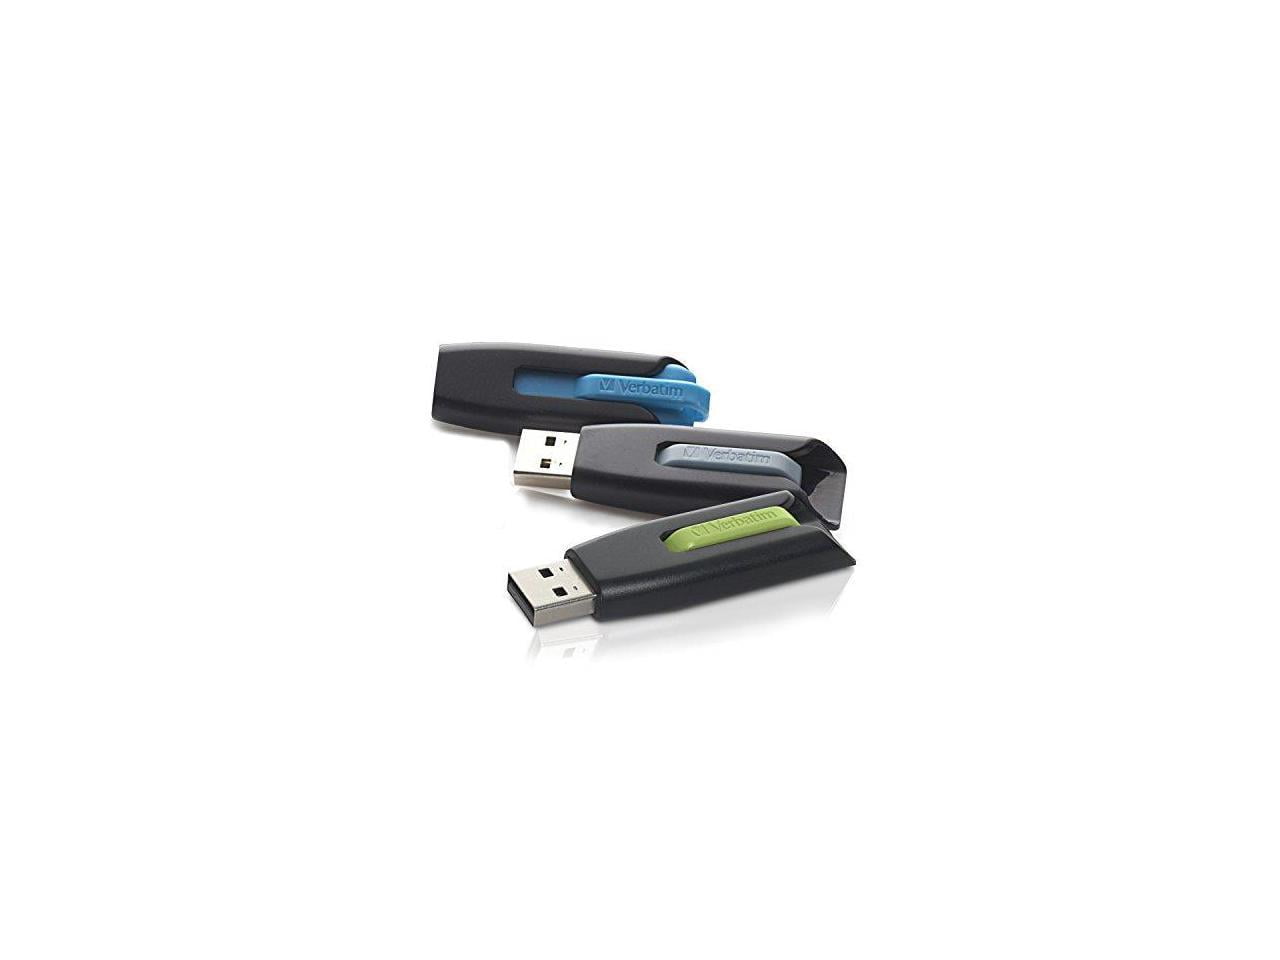 Verbatim 16GB USB Flash Drive - Blue